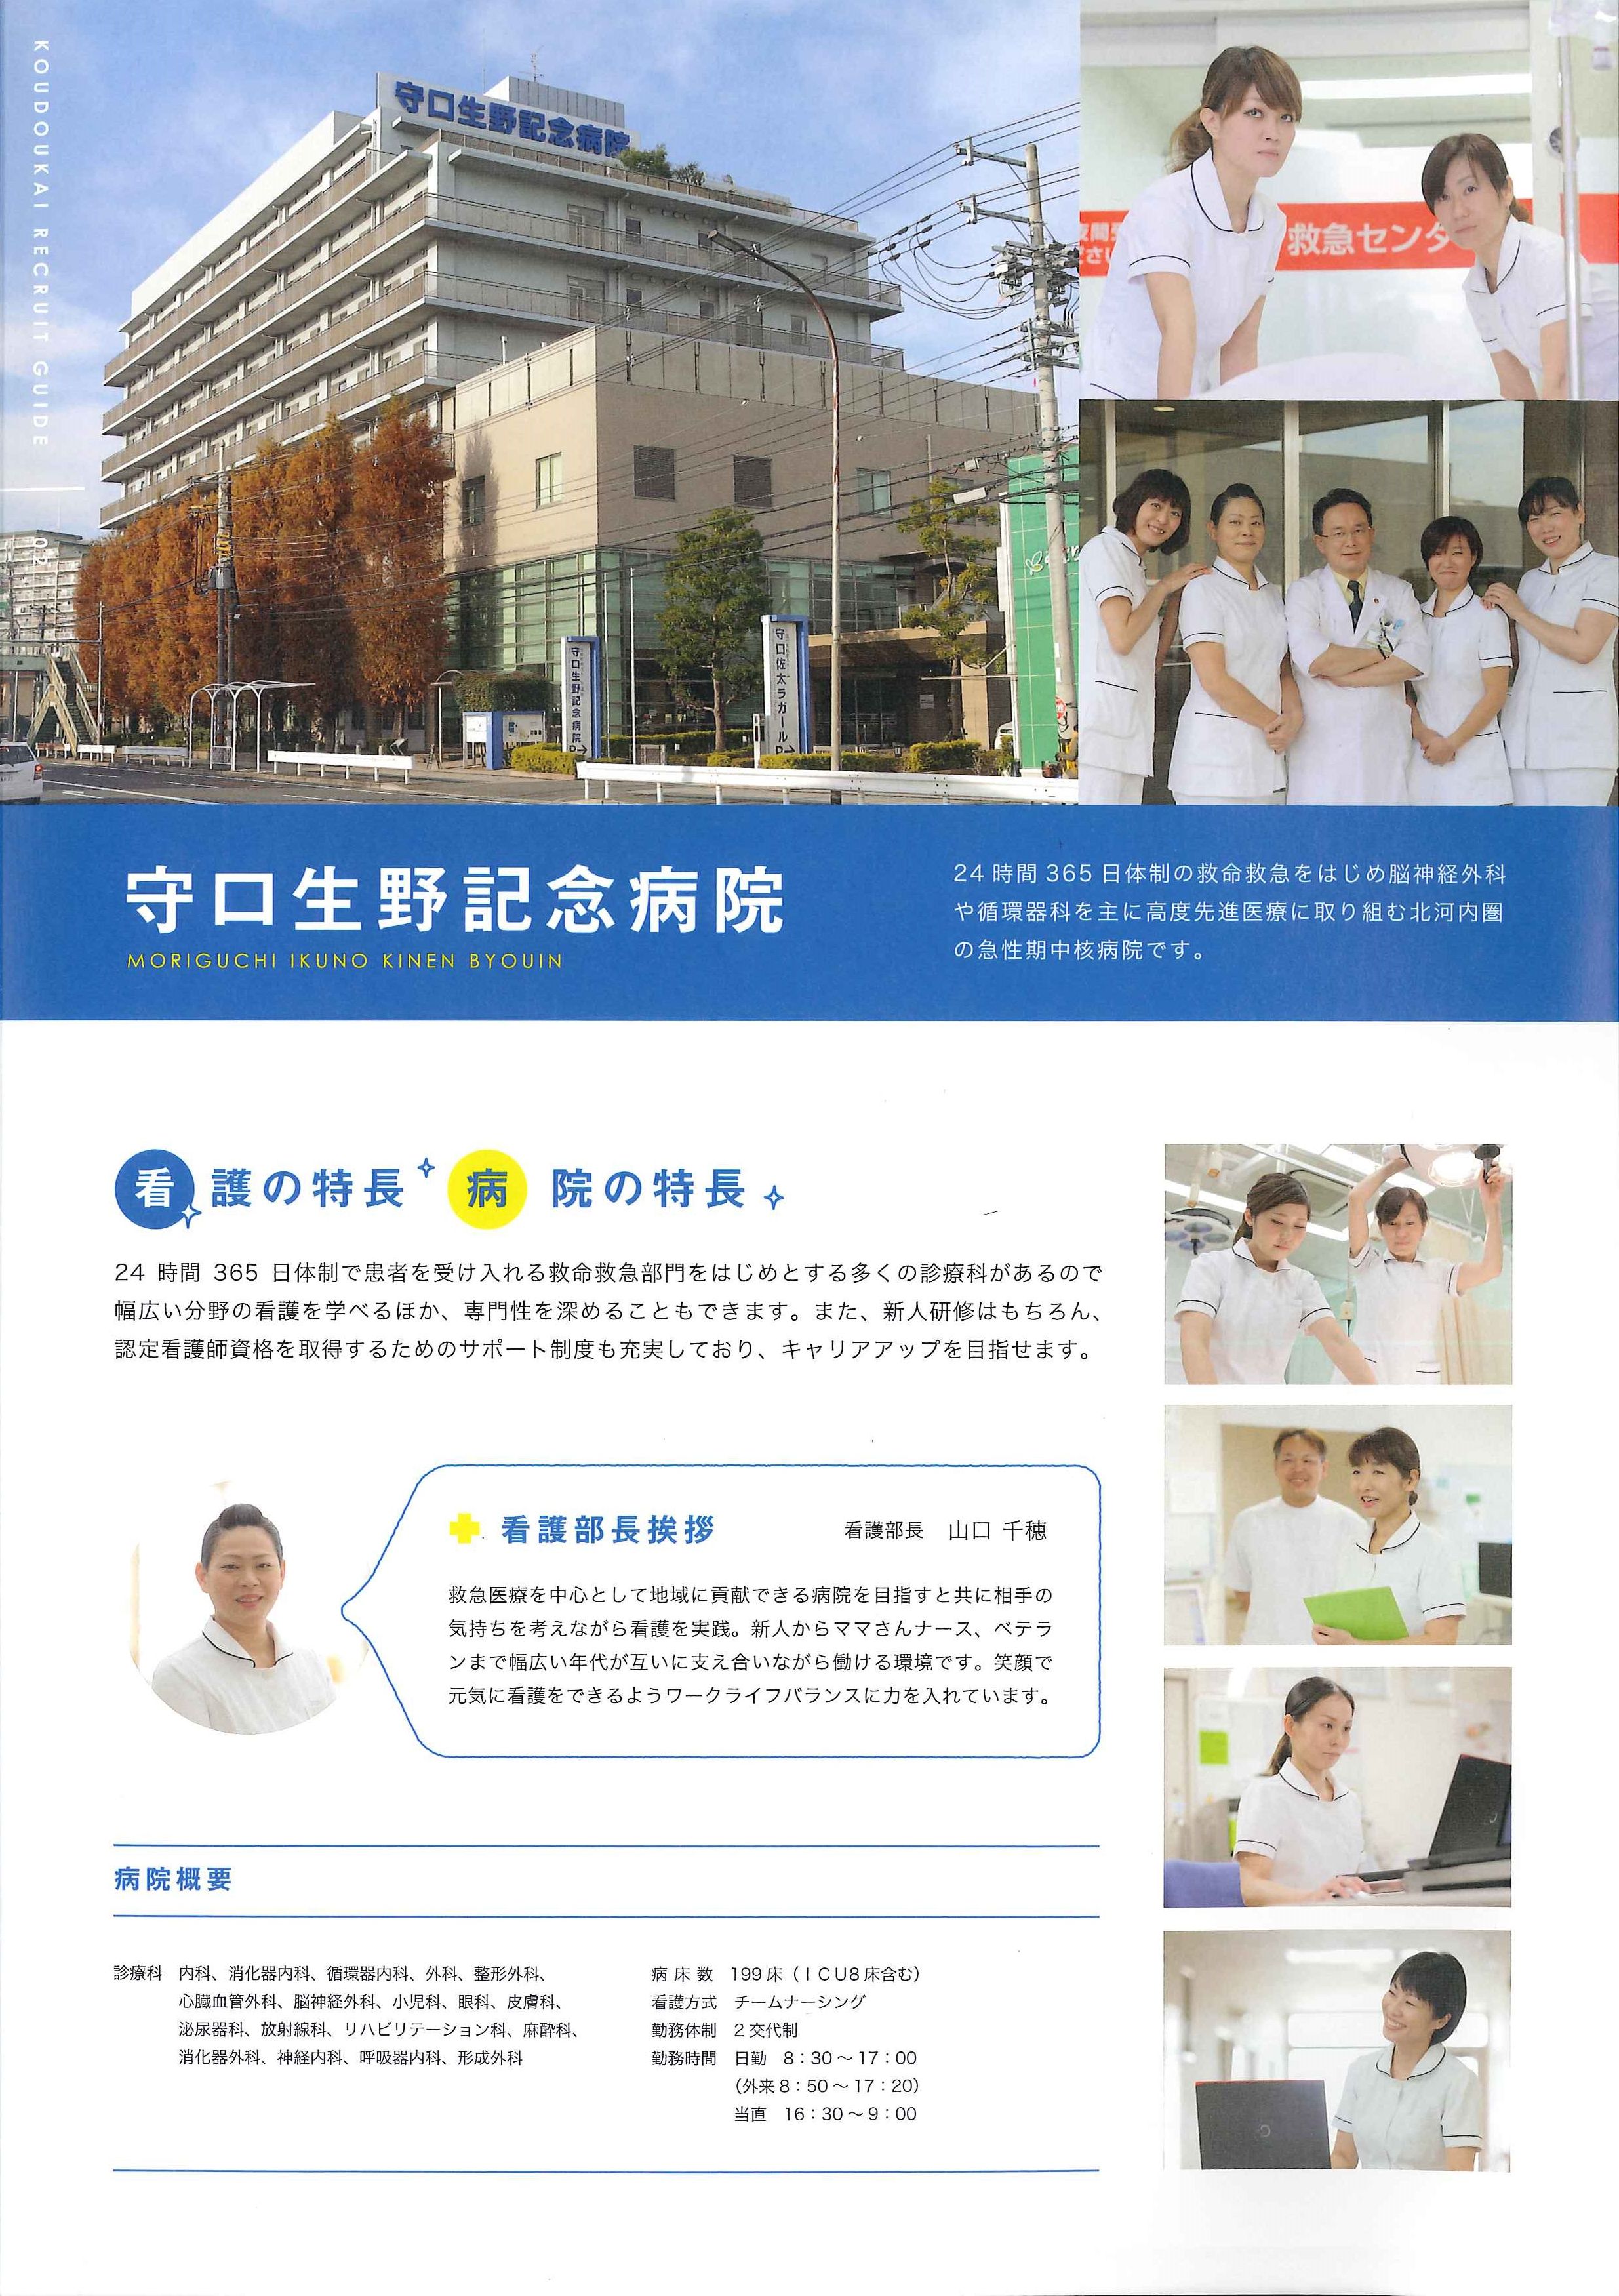 なにわ生野病院 社会医療法人 弘道会 ナスナス 看護師 看護学生のための就職情報サイト